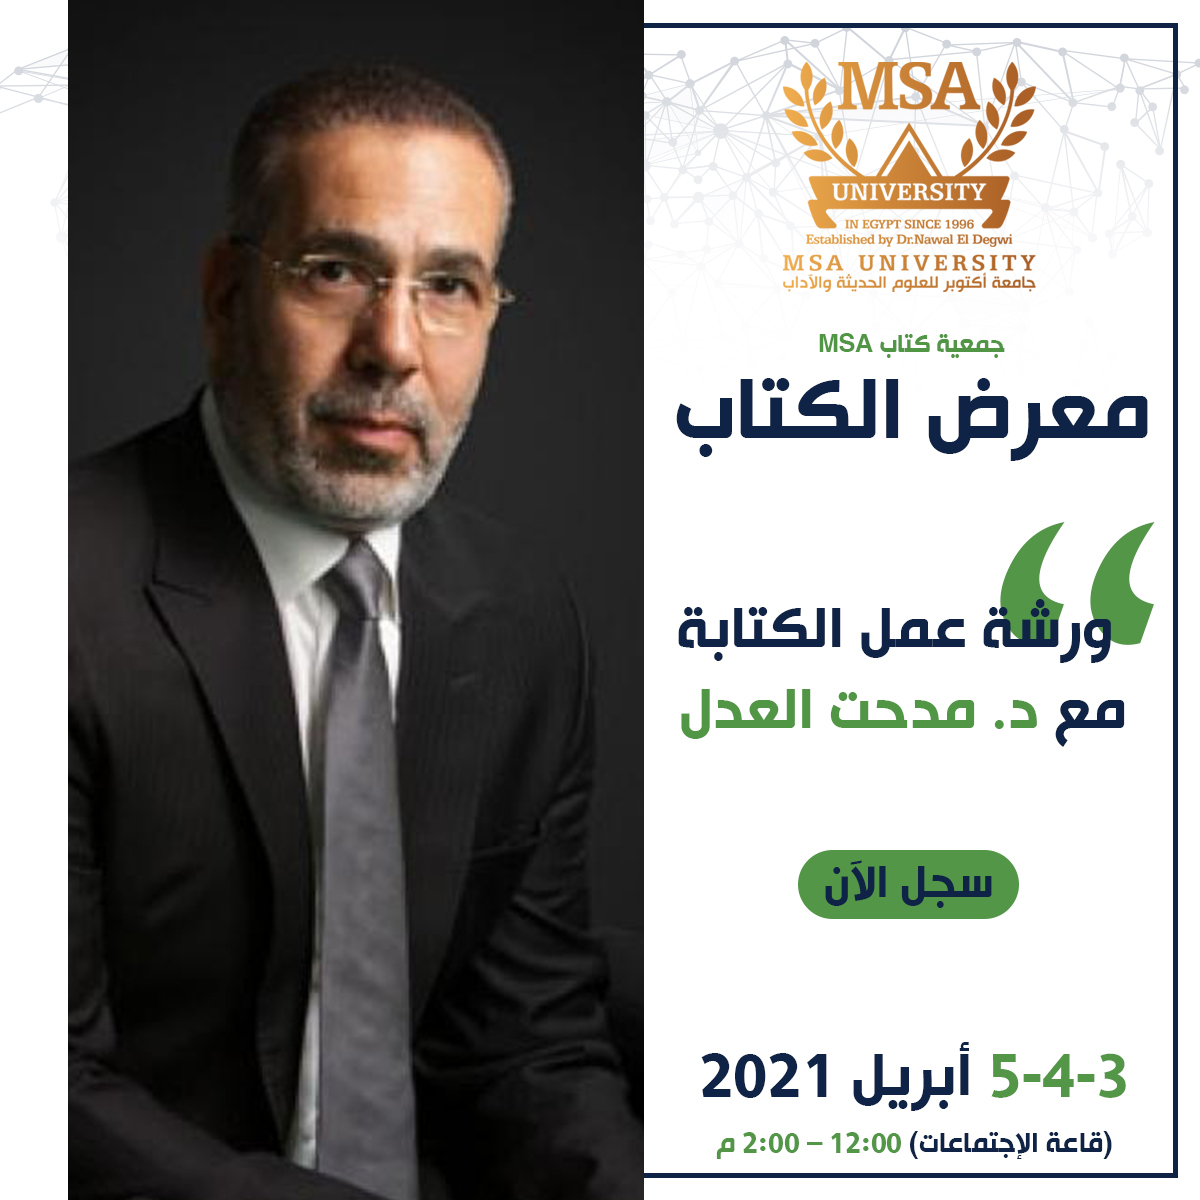 MSA University - Dr. Medhat El-Adl Workshop 